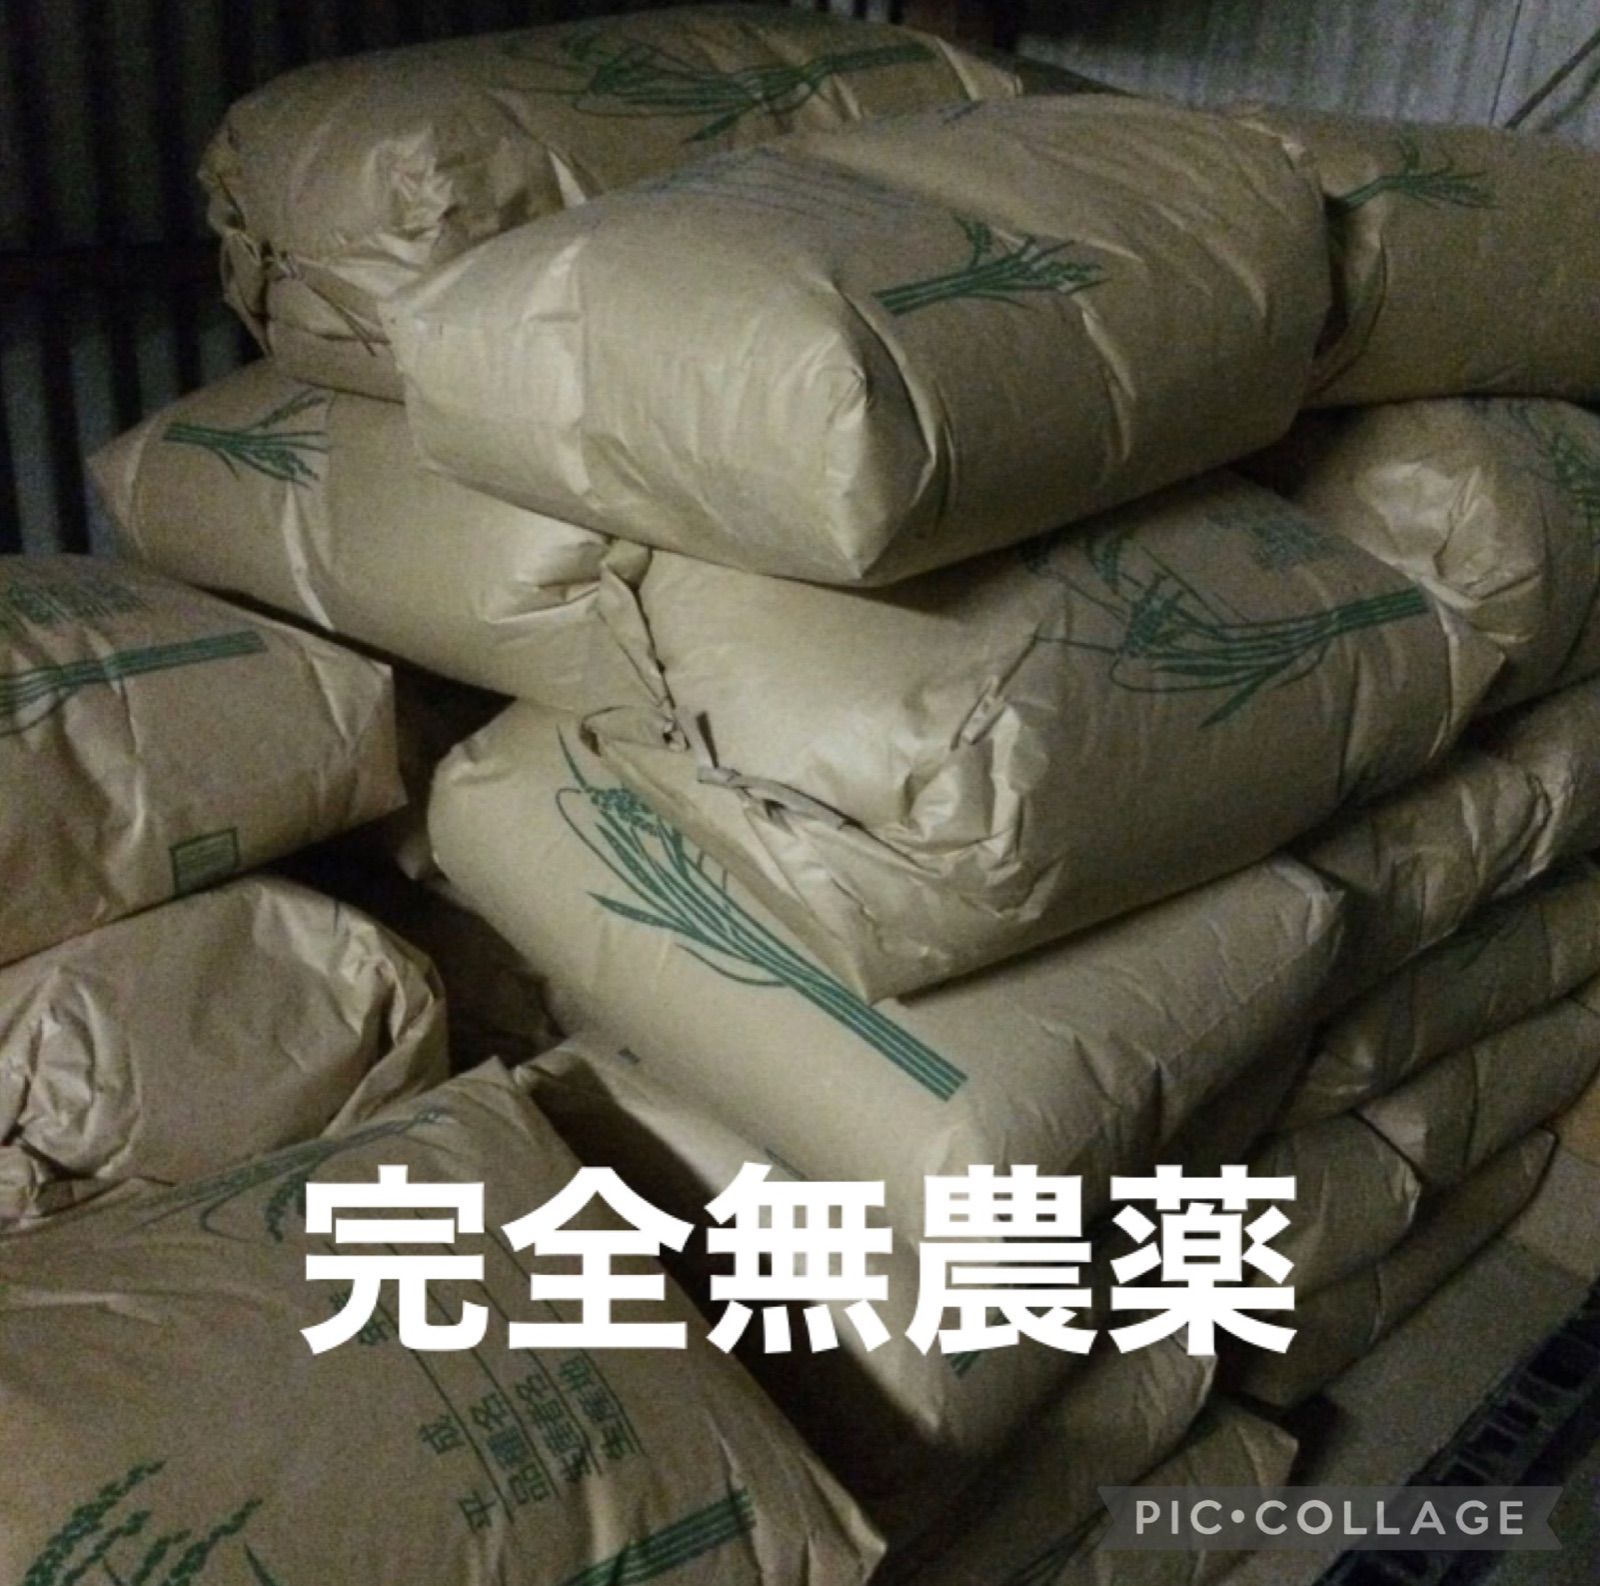 コシヒカリ 10kg×2 農薬不使用玄米 国消国産 農家直送 美容健康 即日配送-0